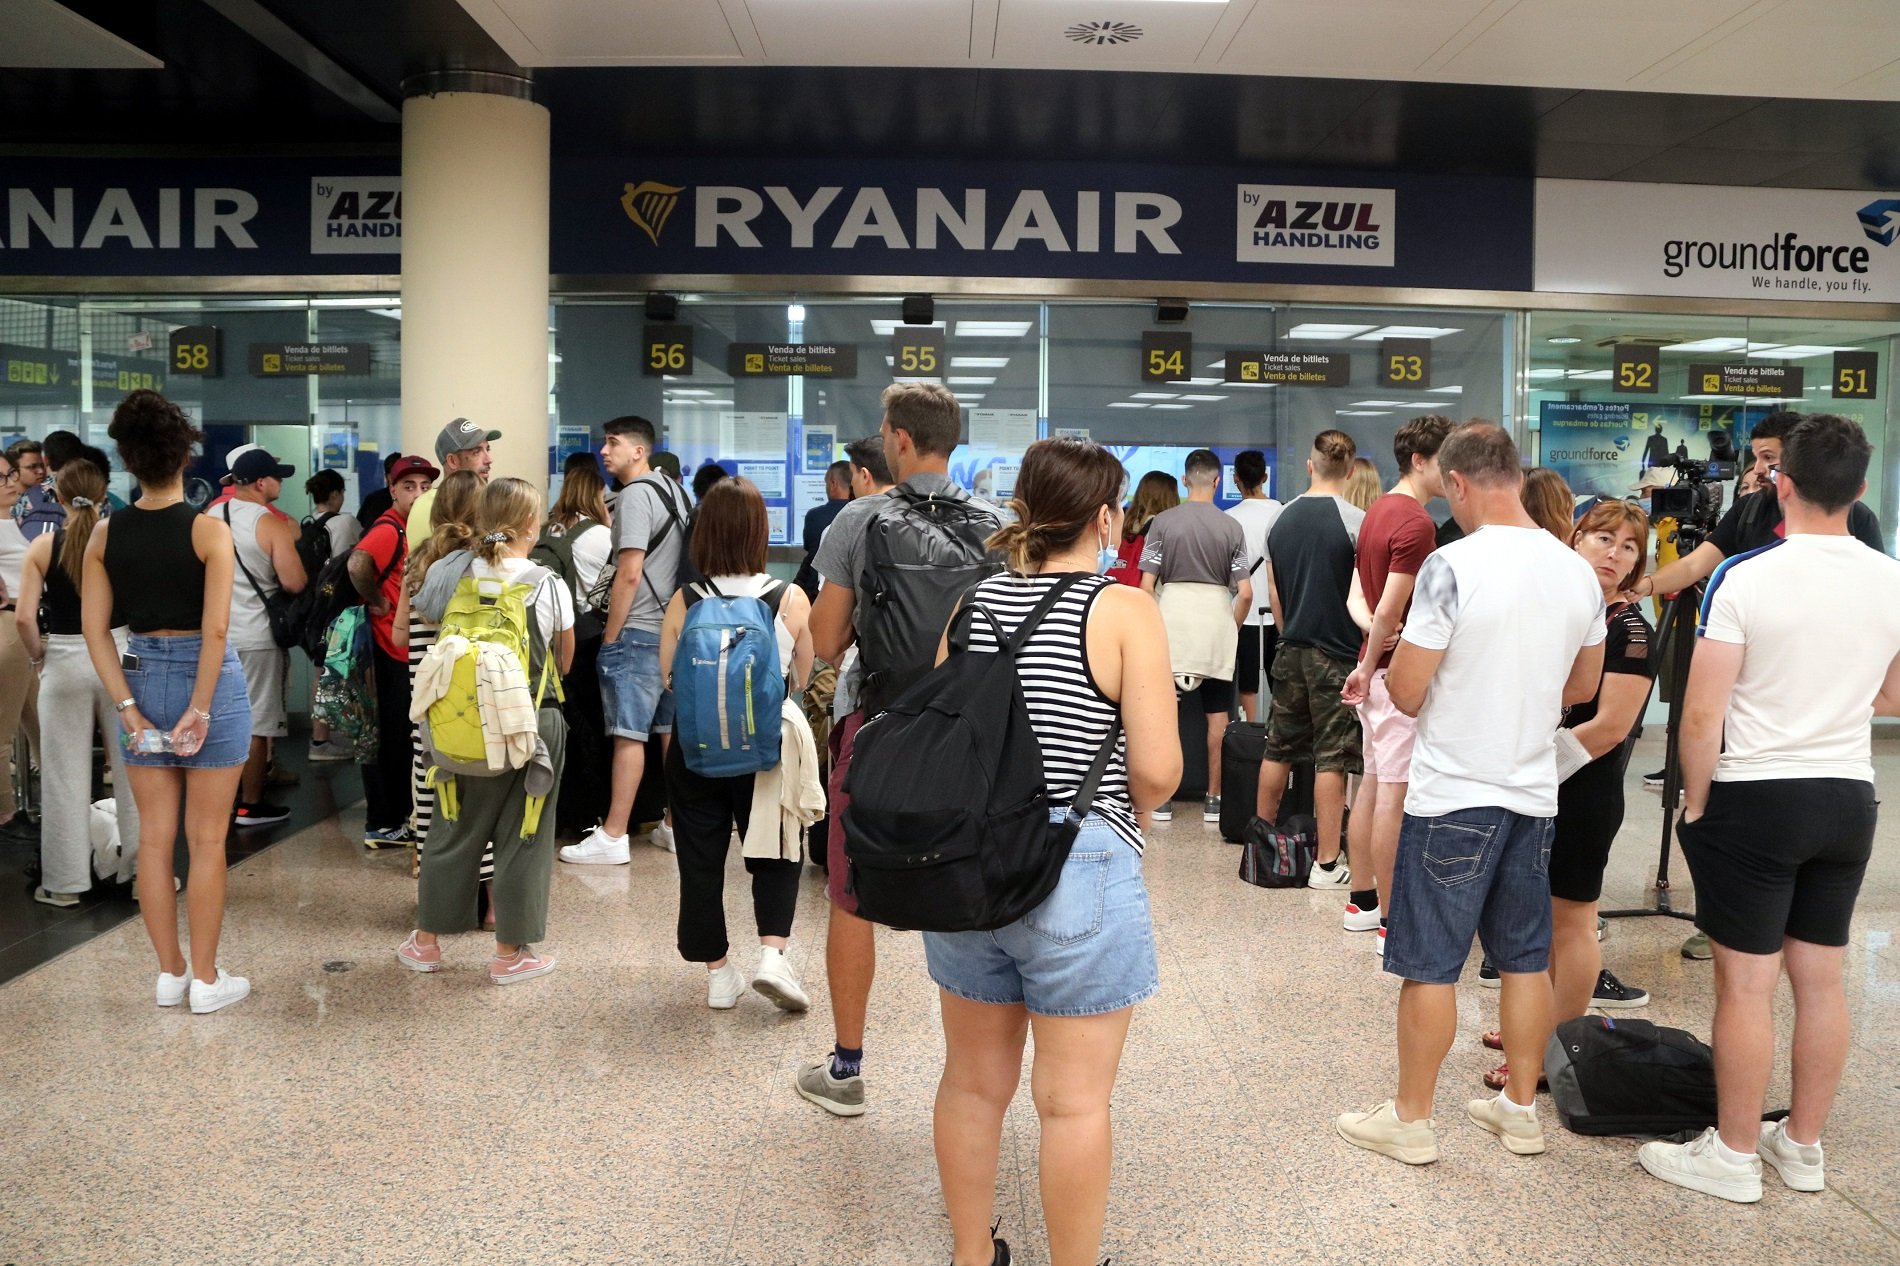 4 vuelos cancelados y 12 retrasos en el aeropuerto del Prat por la huelga de Ryanair